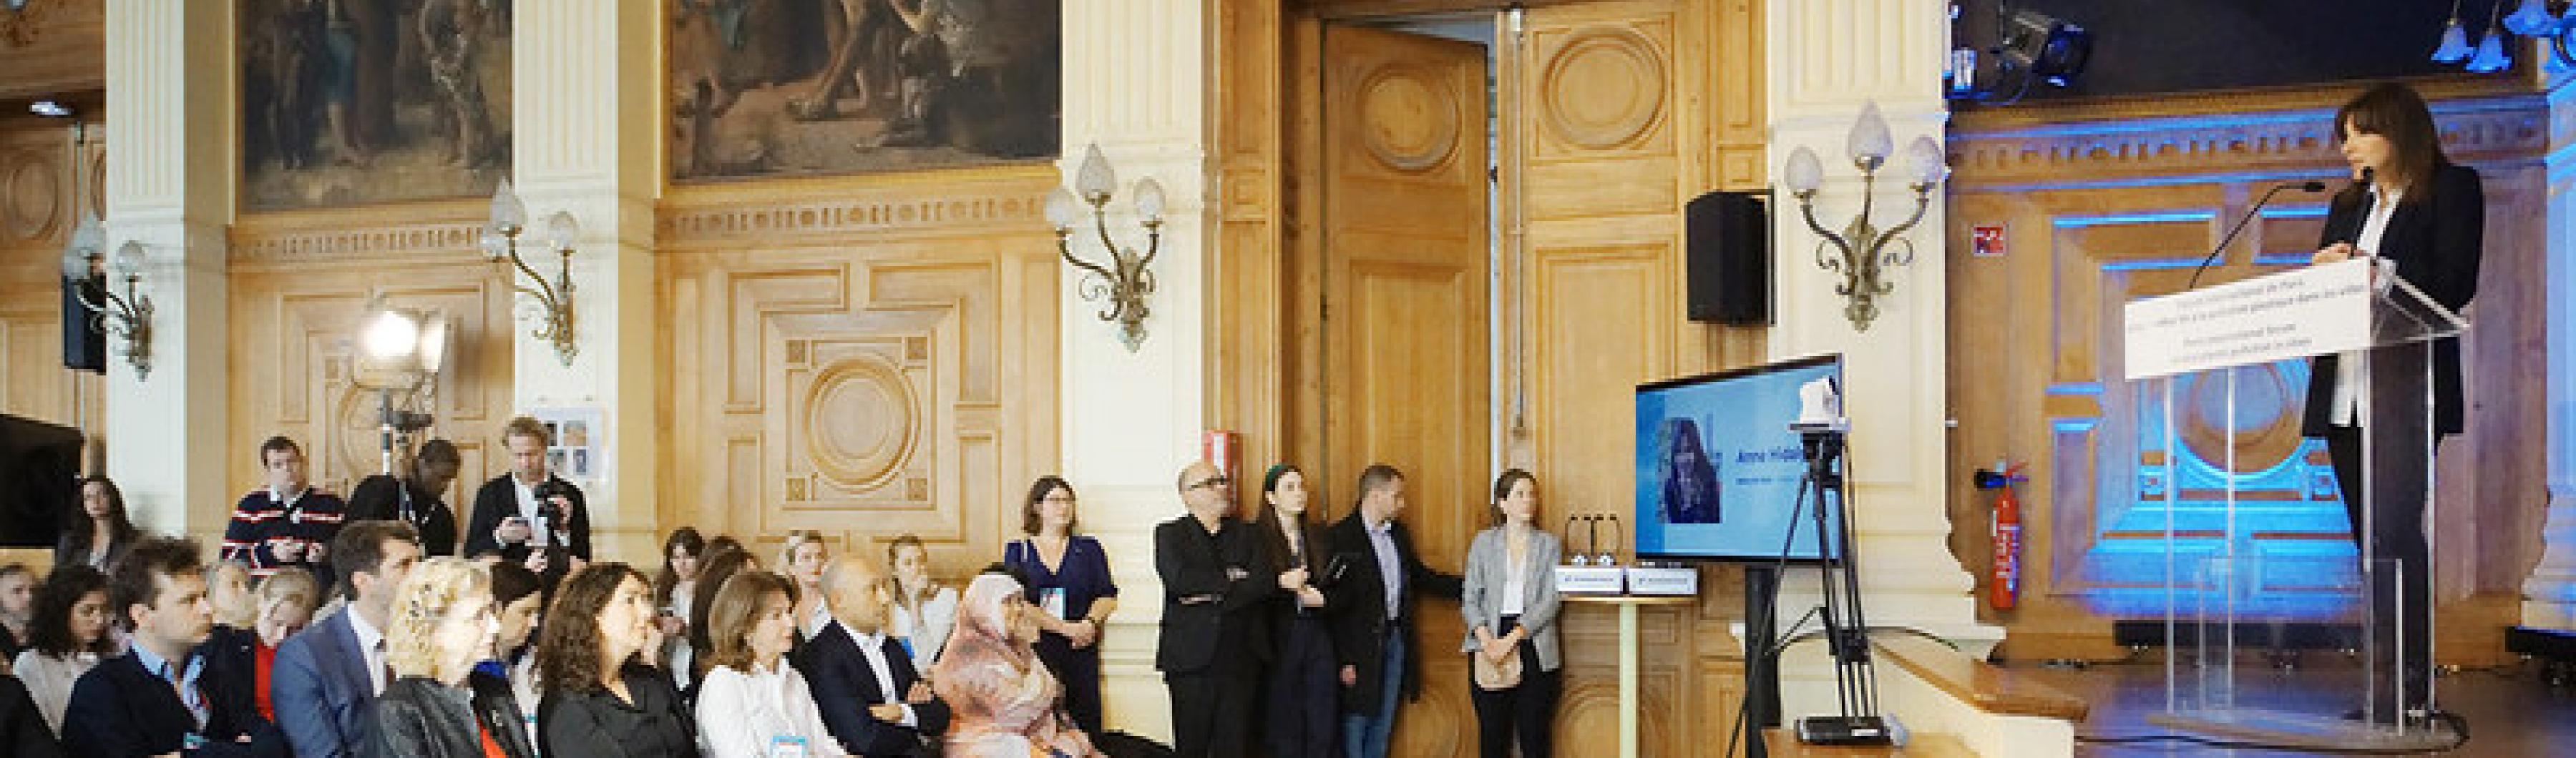 Anne Hidalgo, maire de Paris, s'adresse au public lors du Forum international de Paris pour mettre fin à la pollution plastique dans les villes.